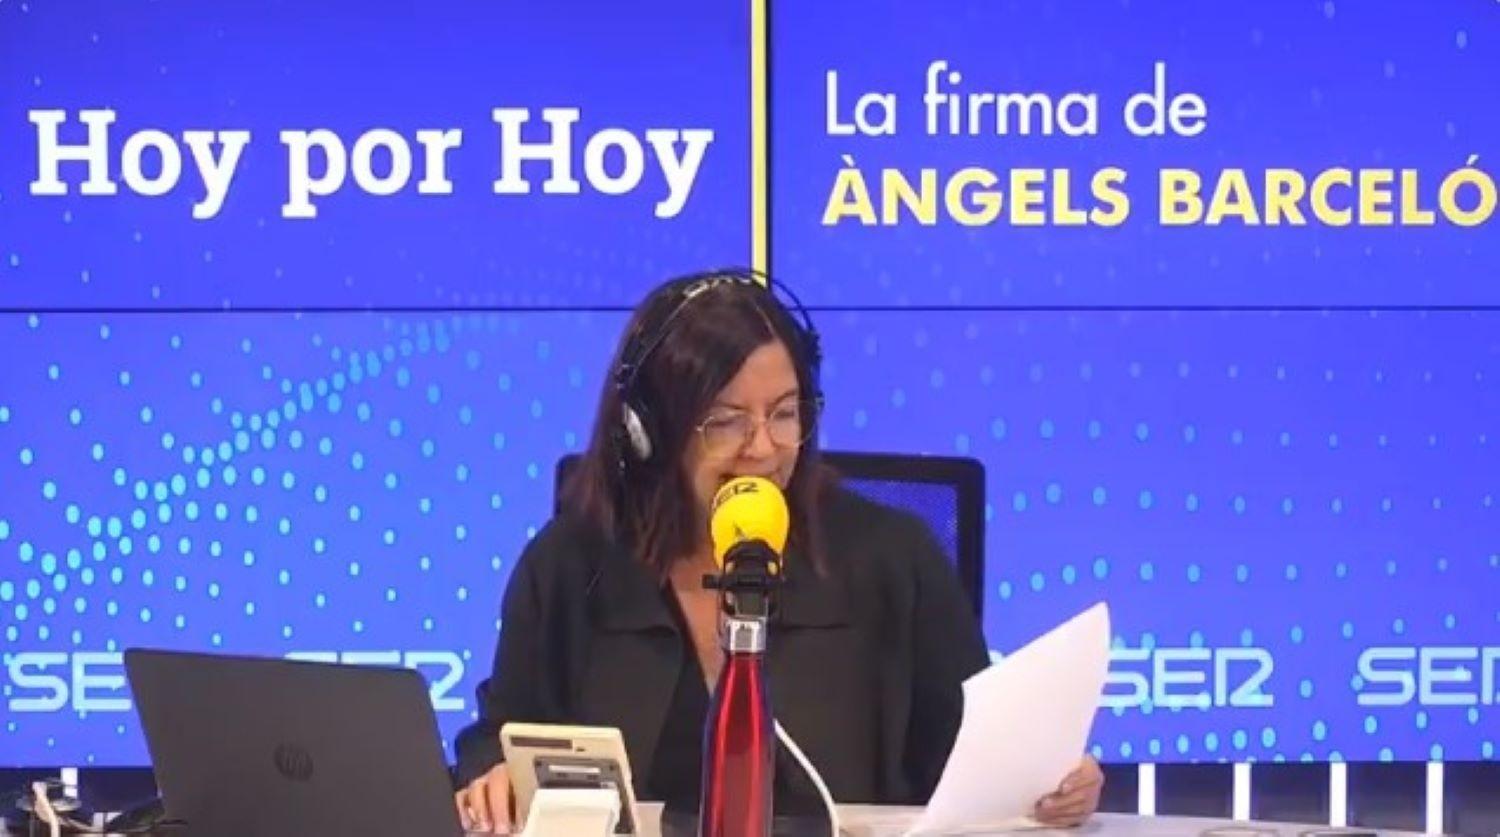 La presentadora de 'Hoy por hoy', Àngels Barceló, en una imagen de archivo. Fuente: Cadena Ser.